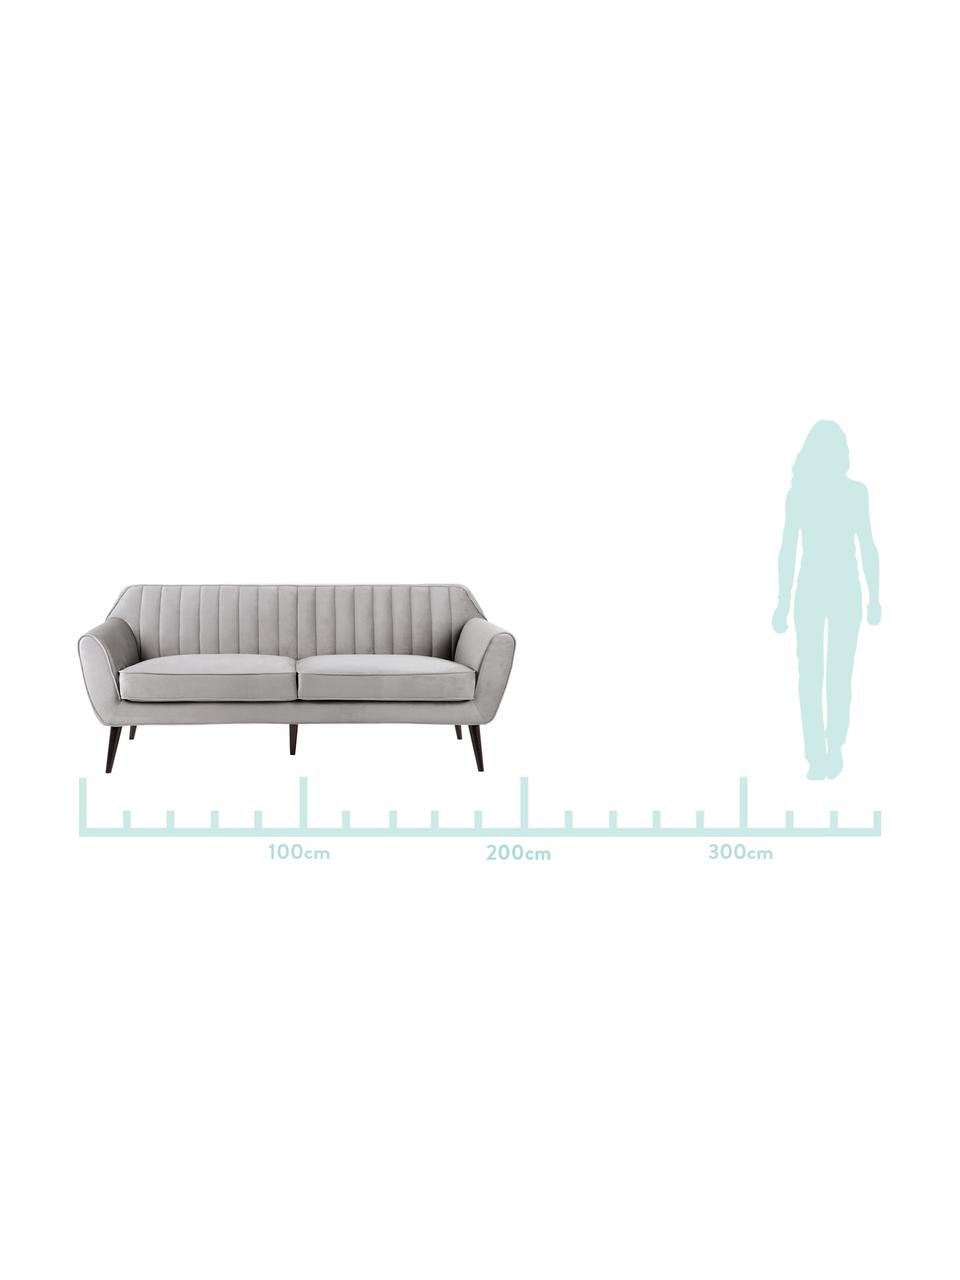 Samt-Sofa Weaver (3-Sitzer) in Grau mit Holz-Füßen, Bezug: 100% Polyestersamt, Rahmen: Schichtholz, Beine: Gummibaumholz, Grau, B 196 x T 85 cm